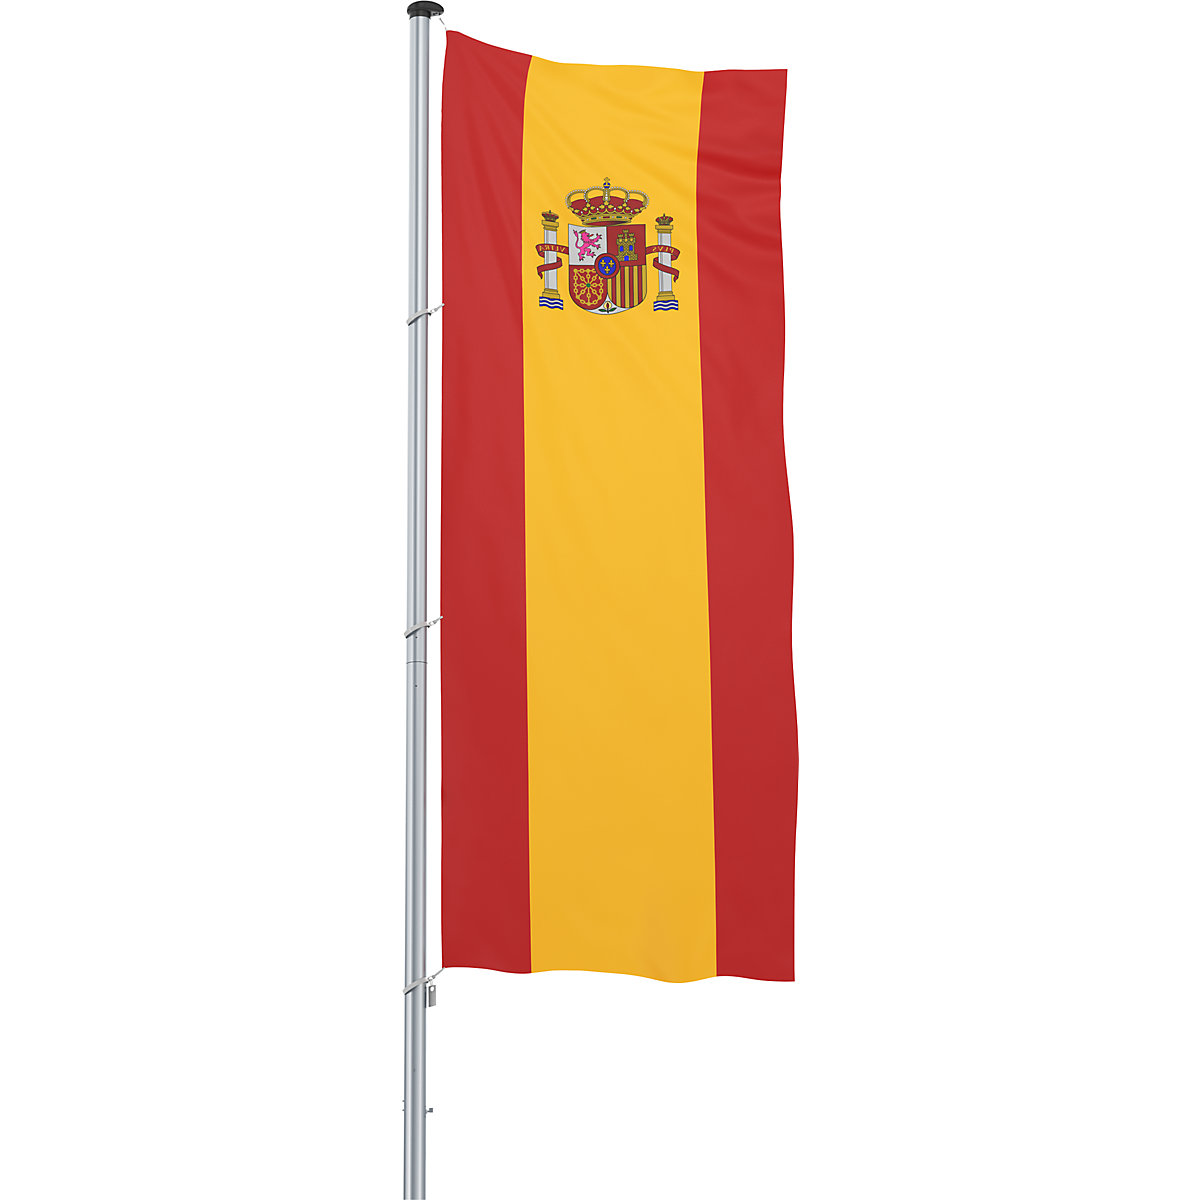 Bandeira para içar/bandeira nacional – Mannus, formato 1,2 x 3 m, Espanha-14